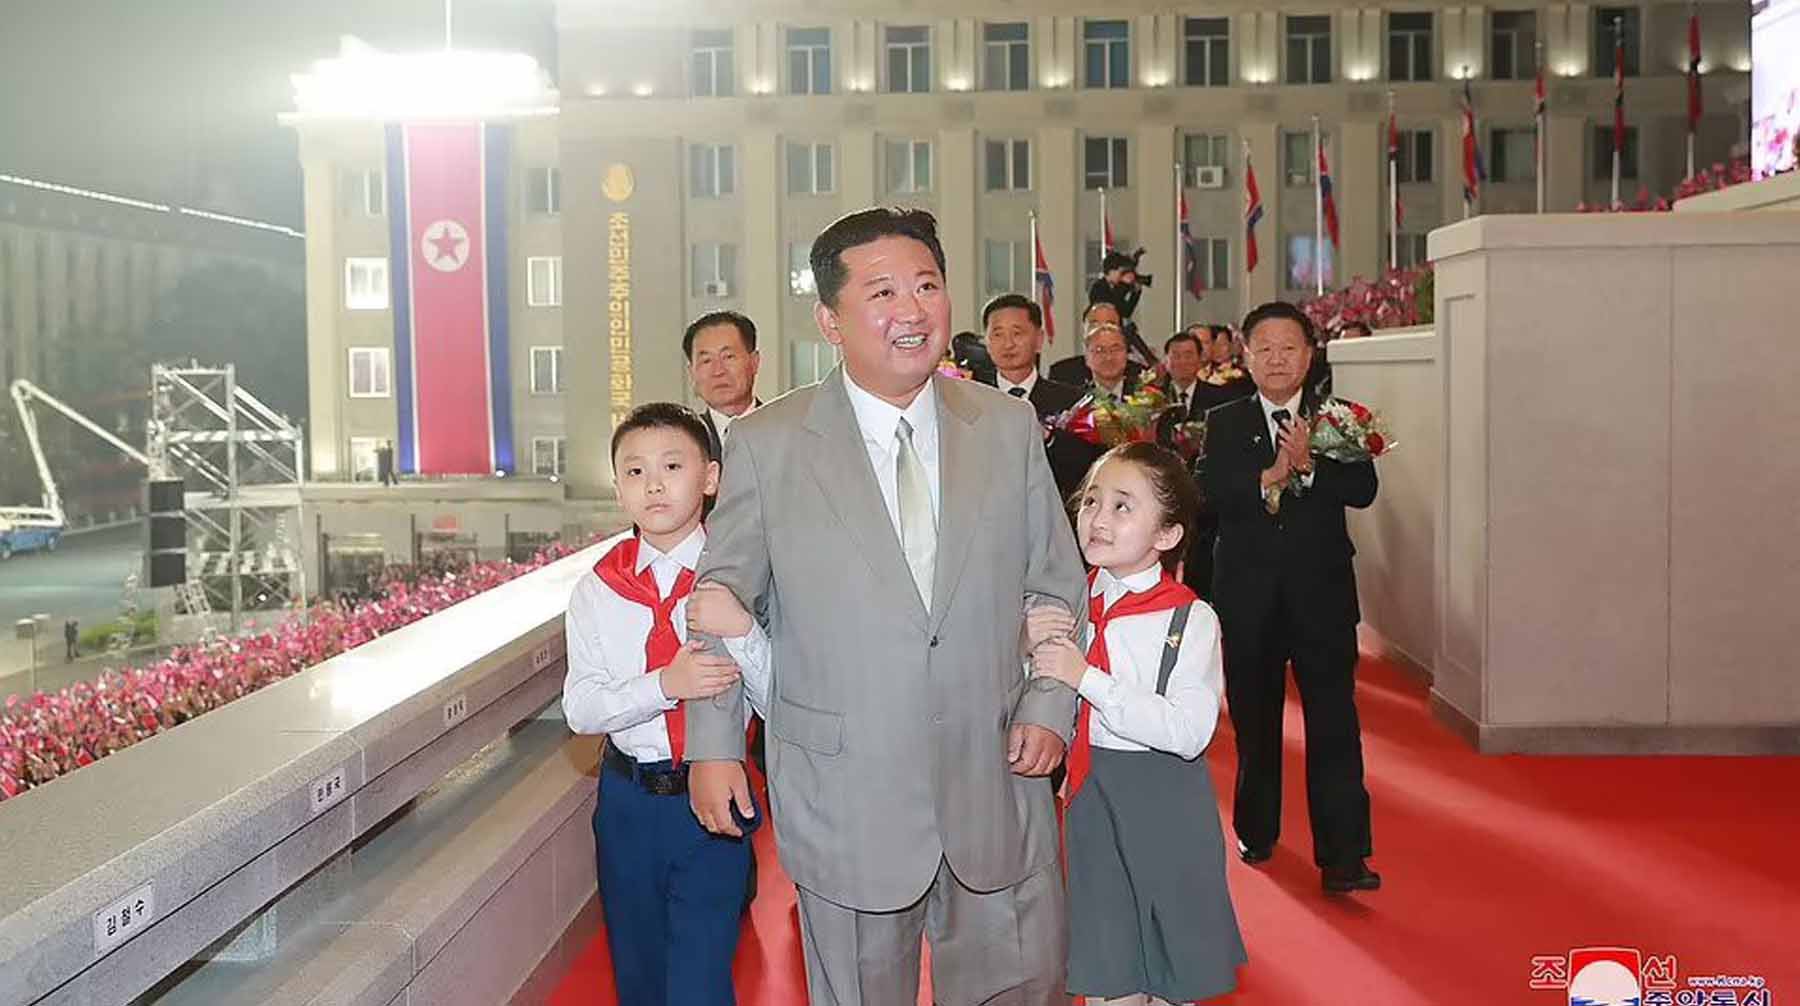 Наблюдатели заметили, что лидер Северной Кореи сильно похудел